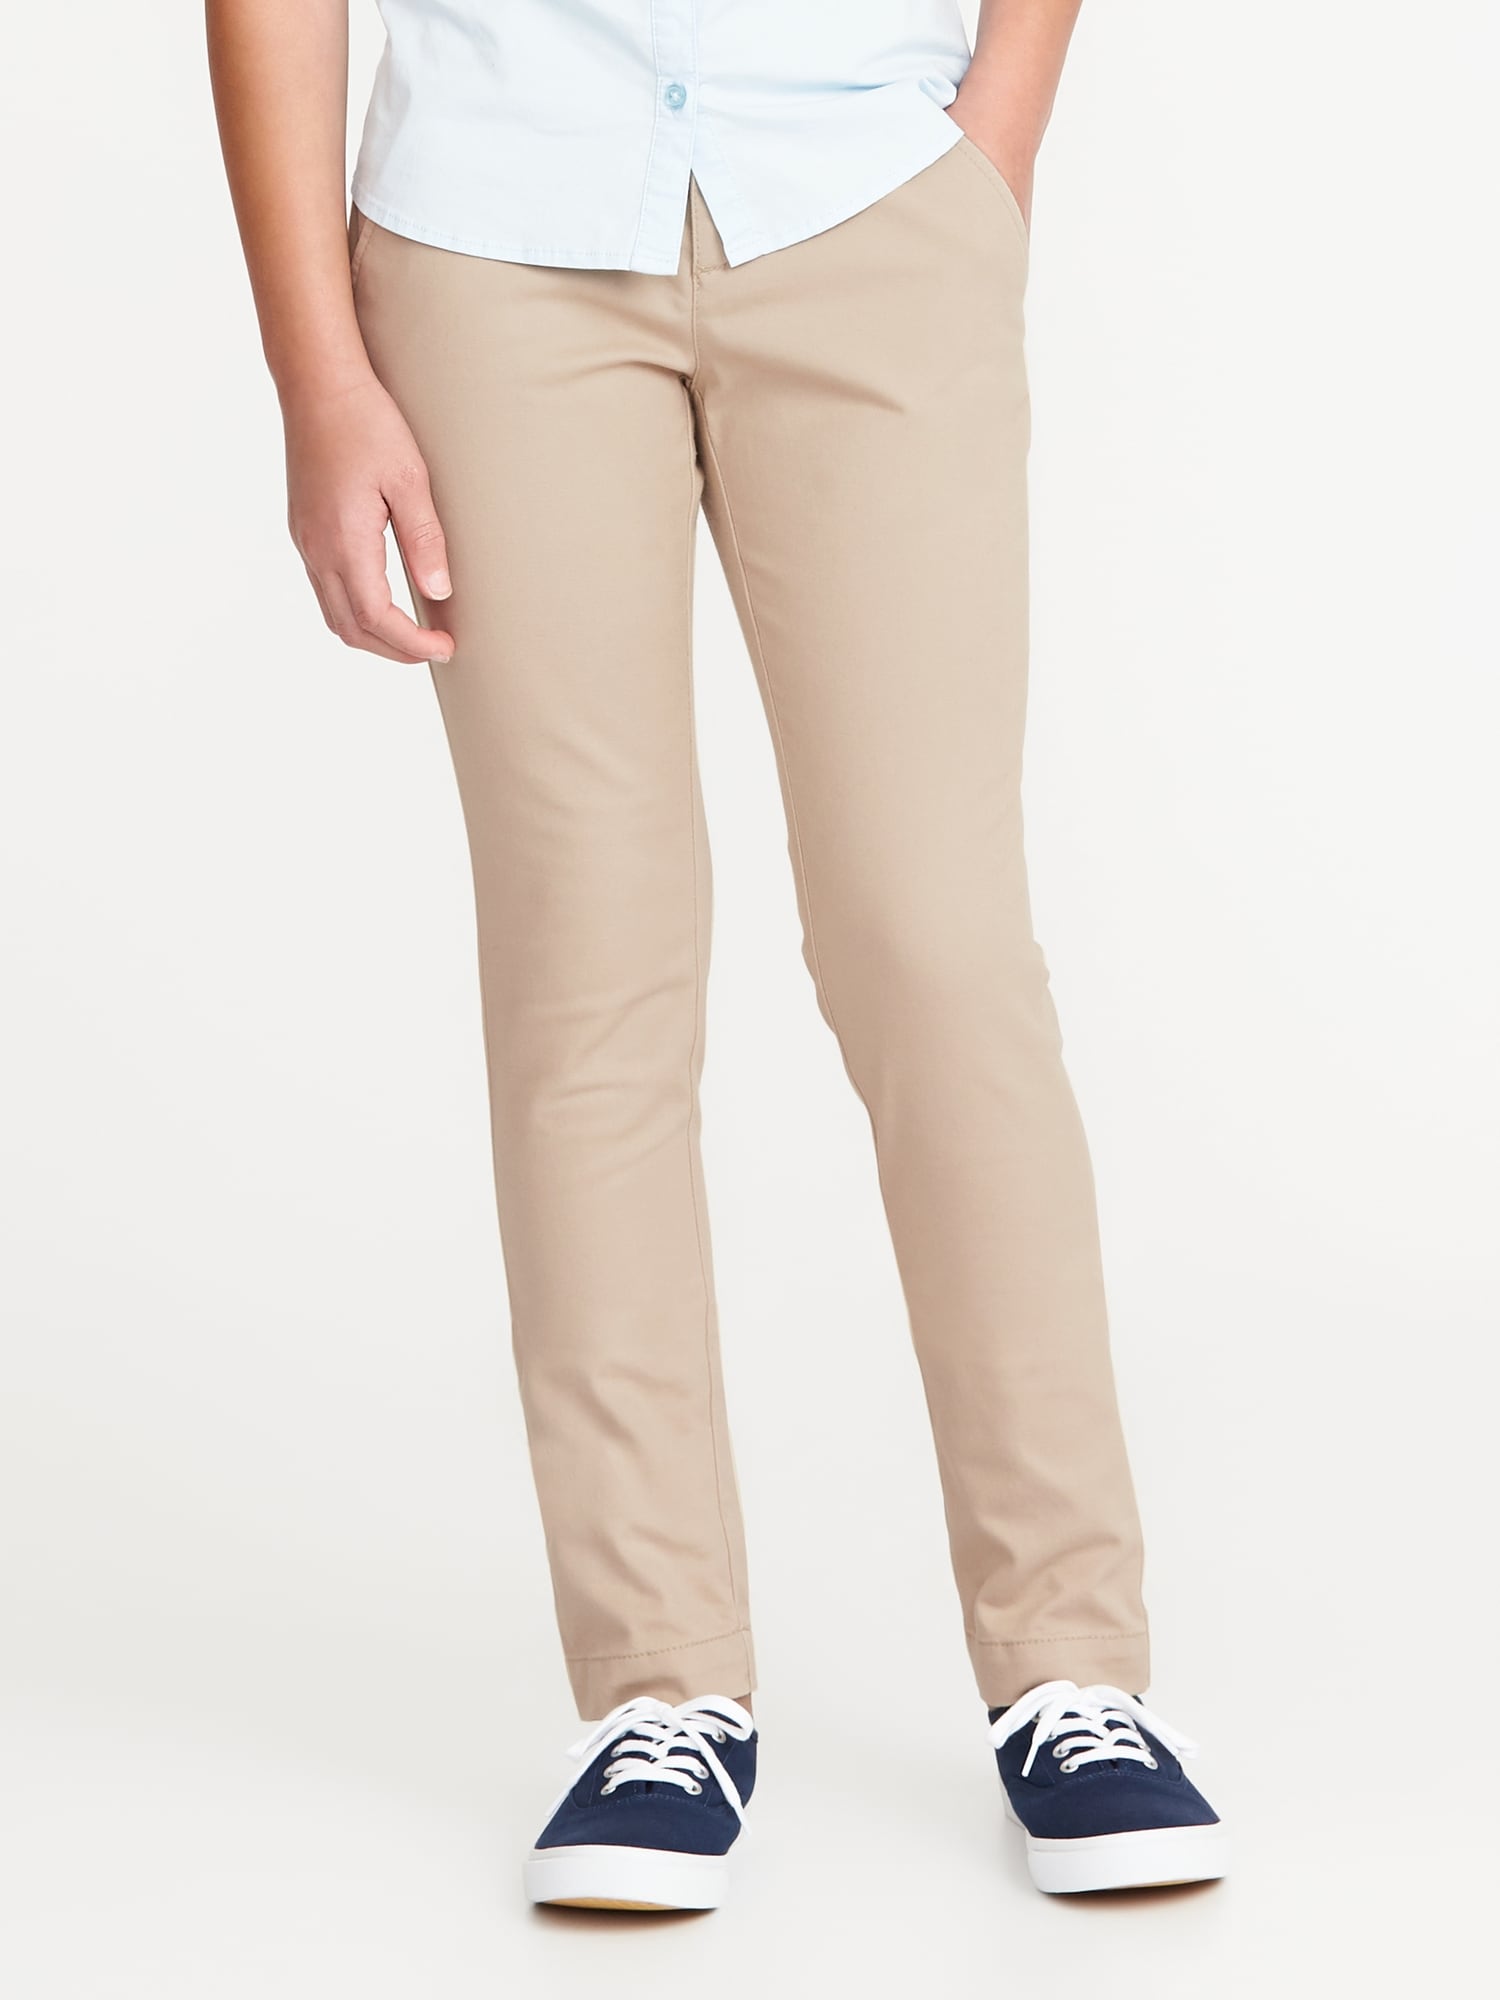 Cotton Blue Plain School Uniform Pants, Size: 22 to 40